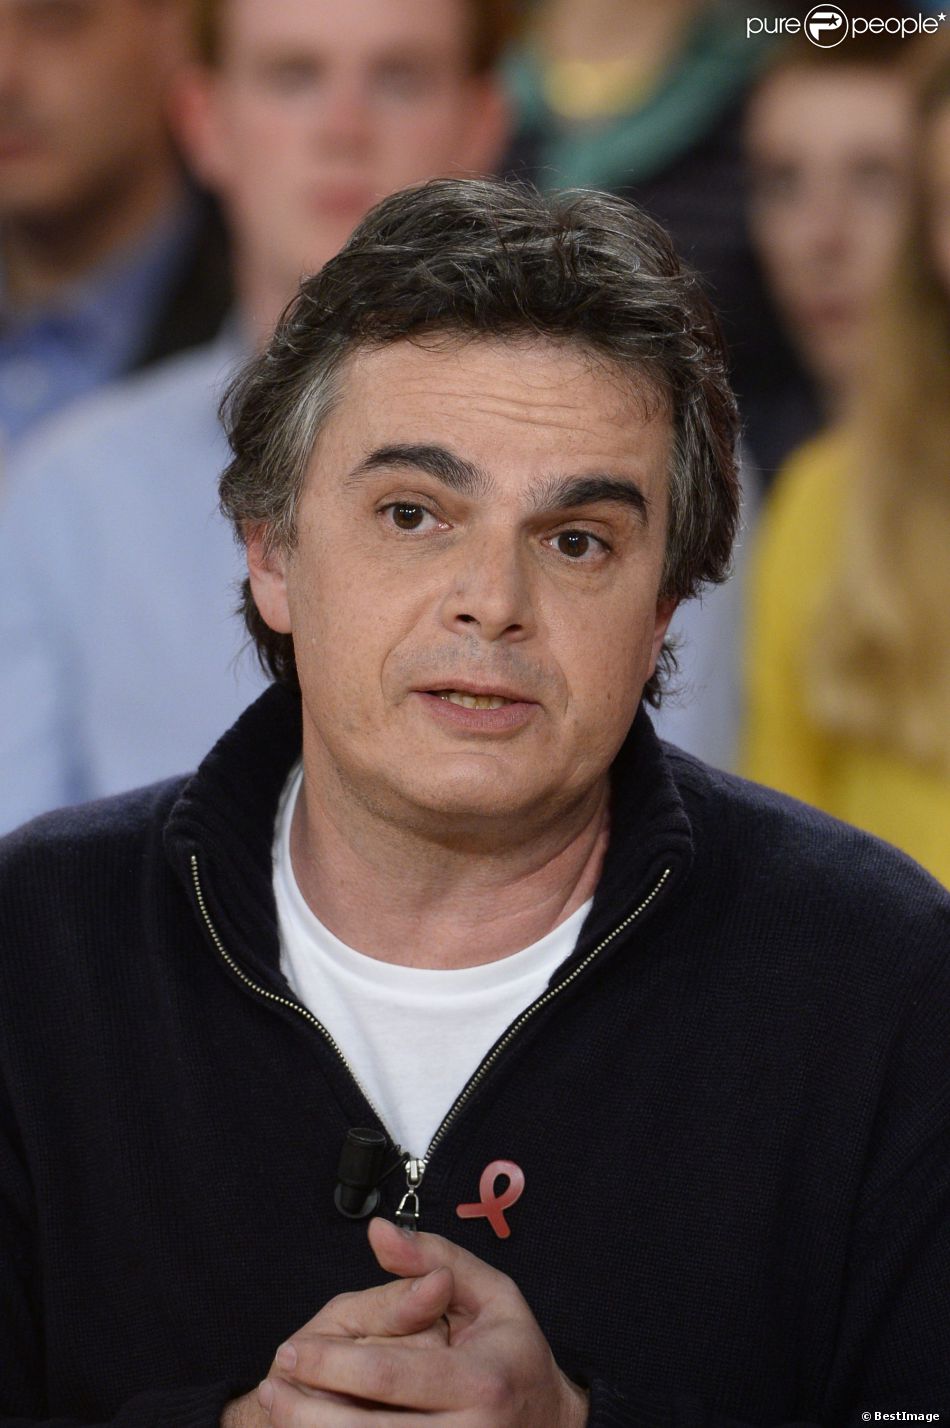 Alexandre Jardin éléction présidentielle 2017, candidat